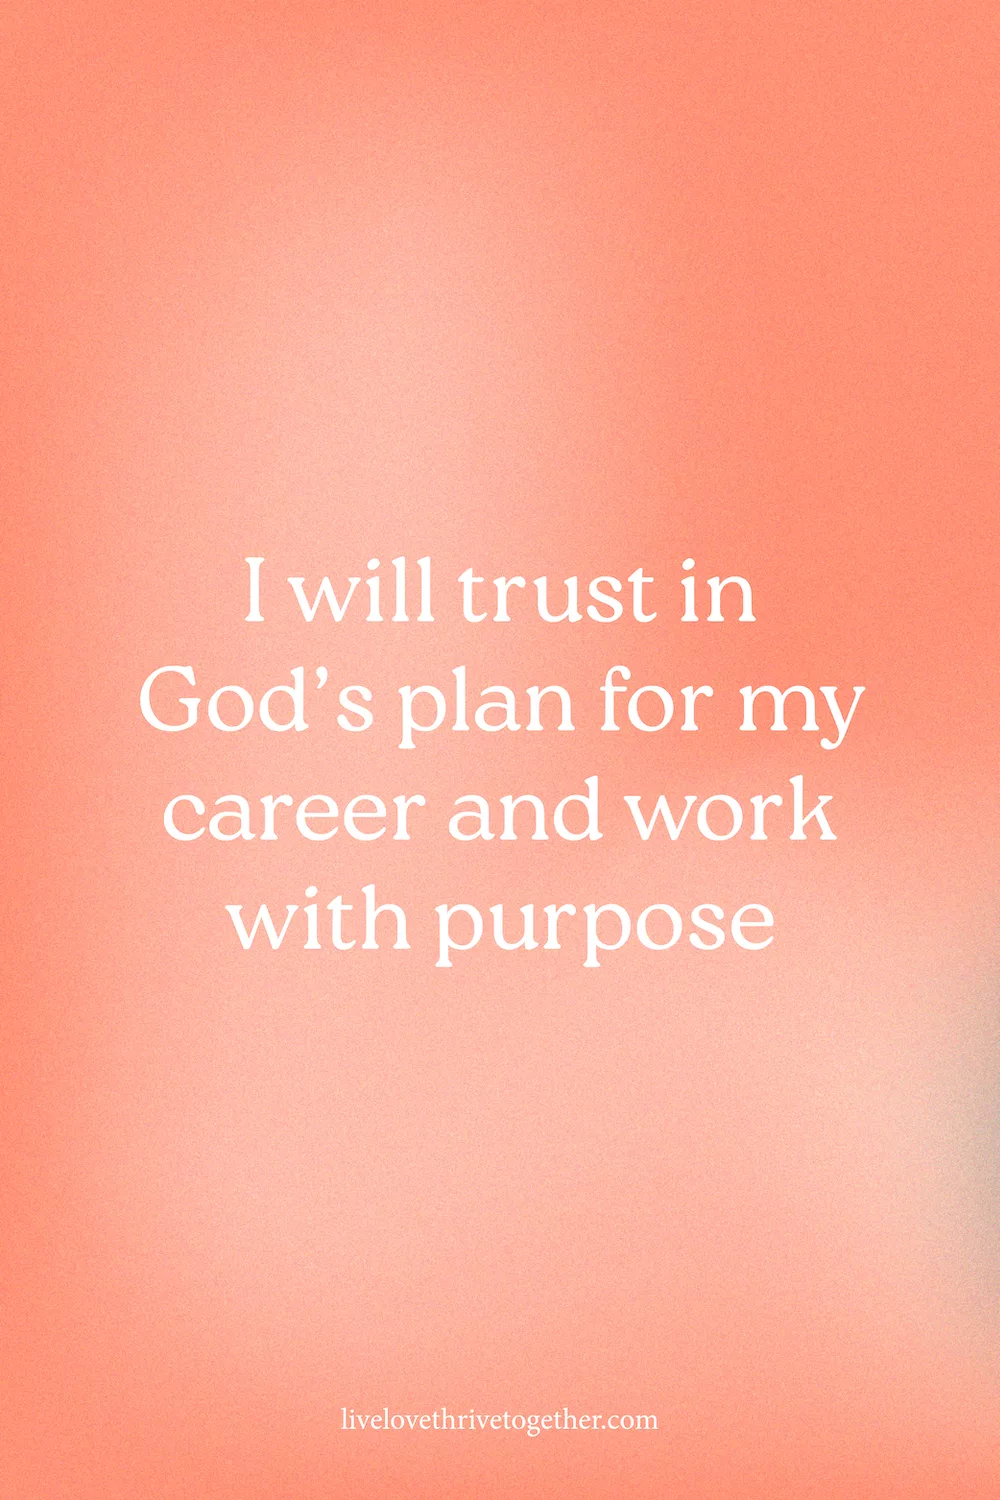 Confiaré en el plan de Dios para mi carrera y trabajaré con propósito | Afirmaciones del lunes